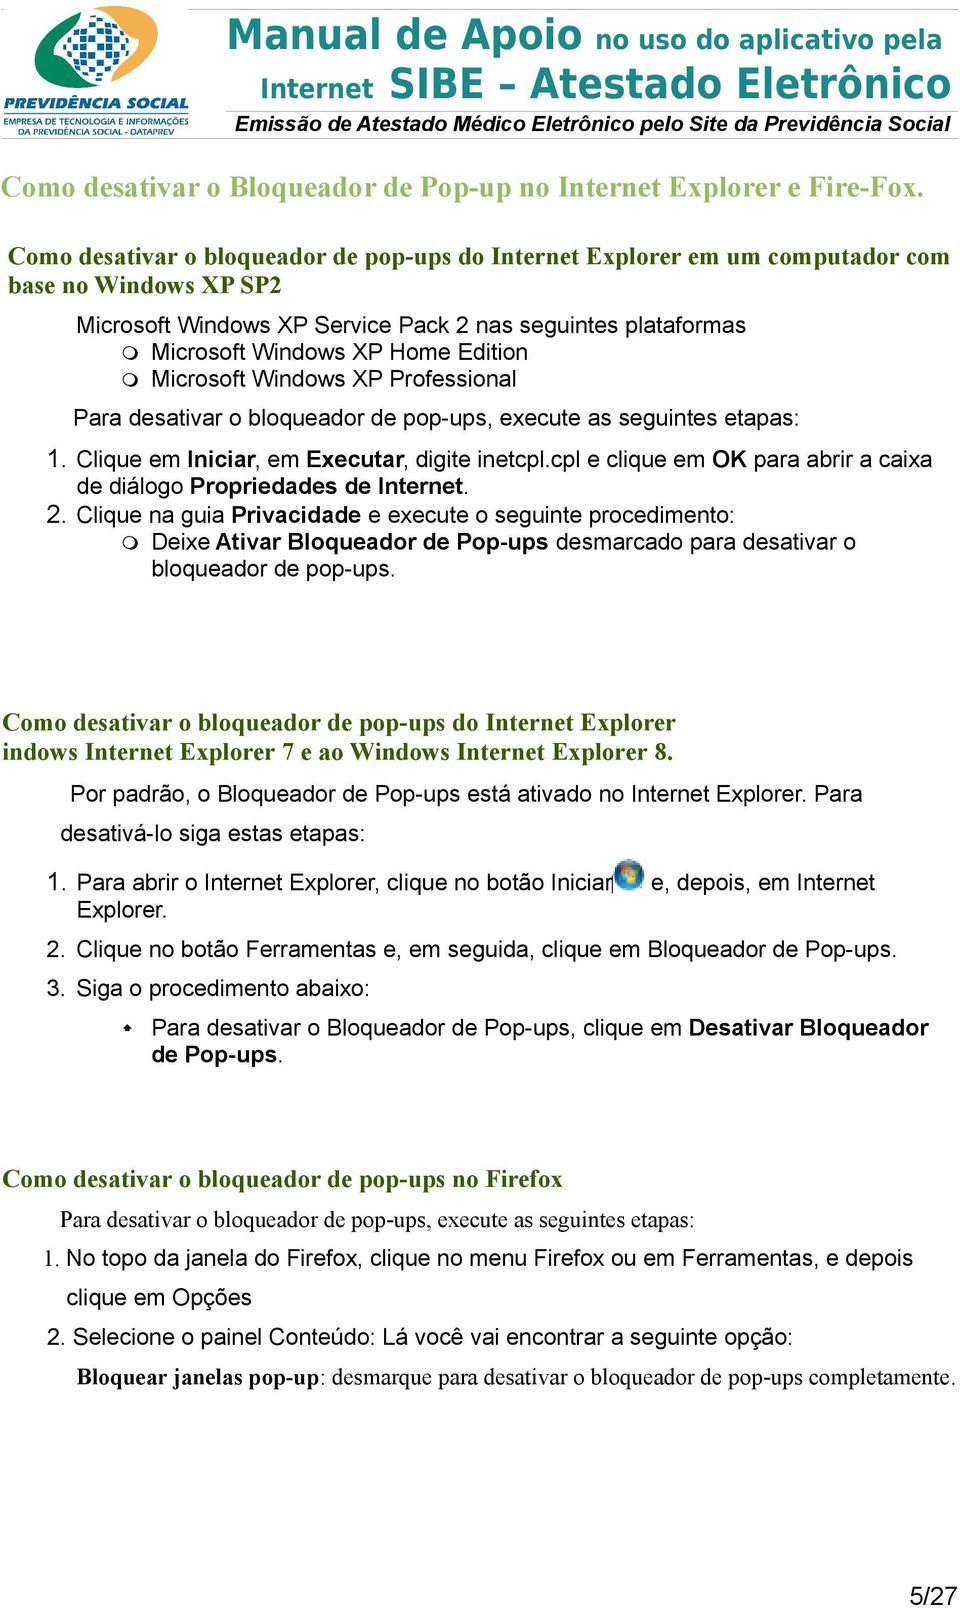 Microsoft Windows XP Professional Para desativar o bloqueador de pop-ups, execute as seguintes etapas: 1. Clique em Iniciar, em Executar, digite inetcpl.